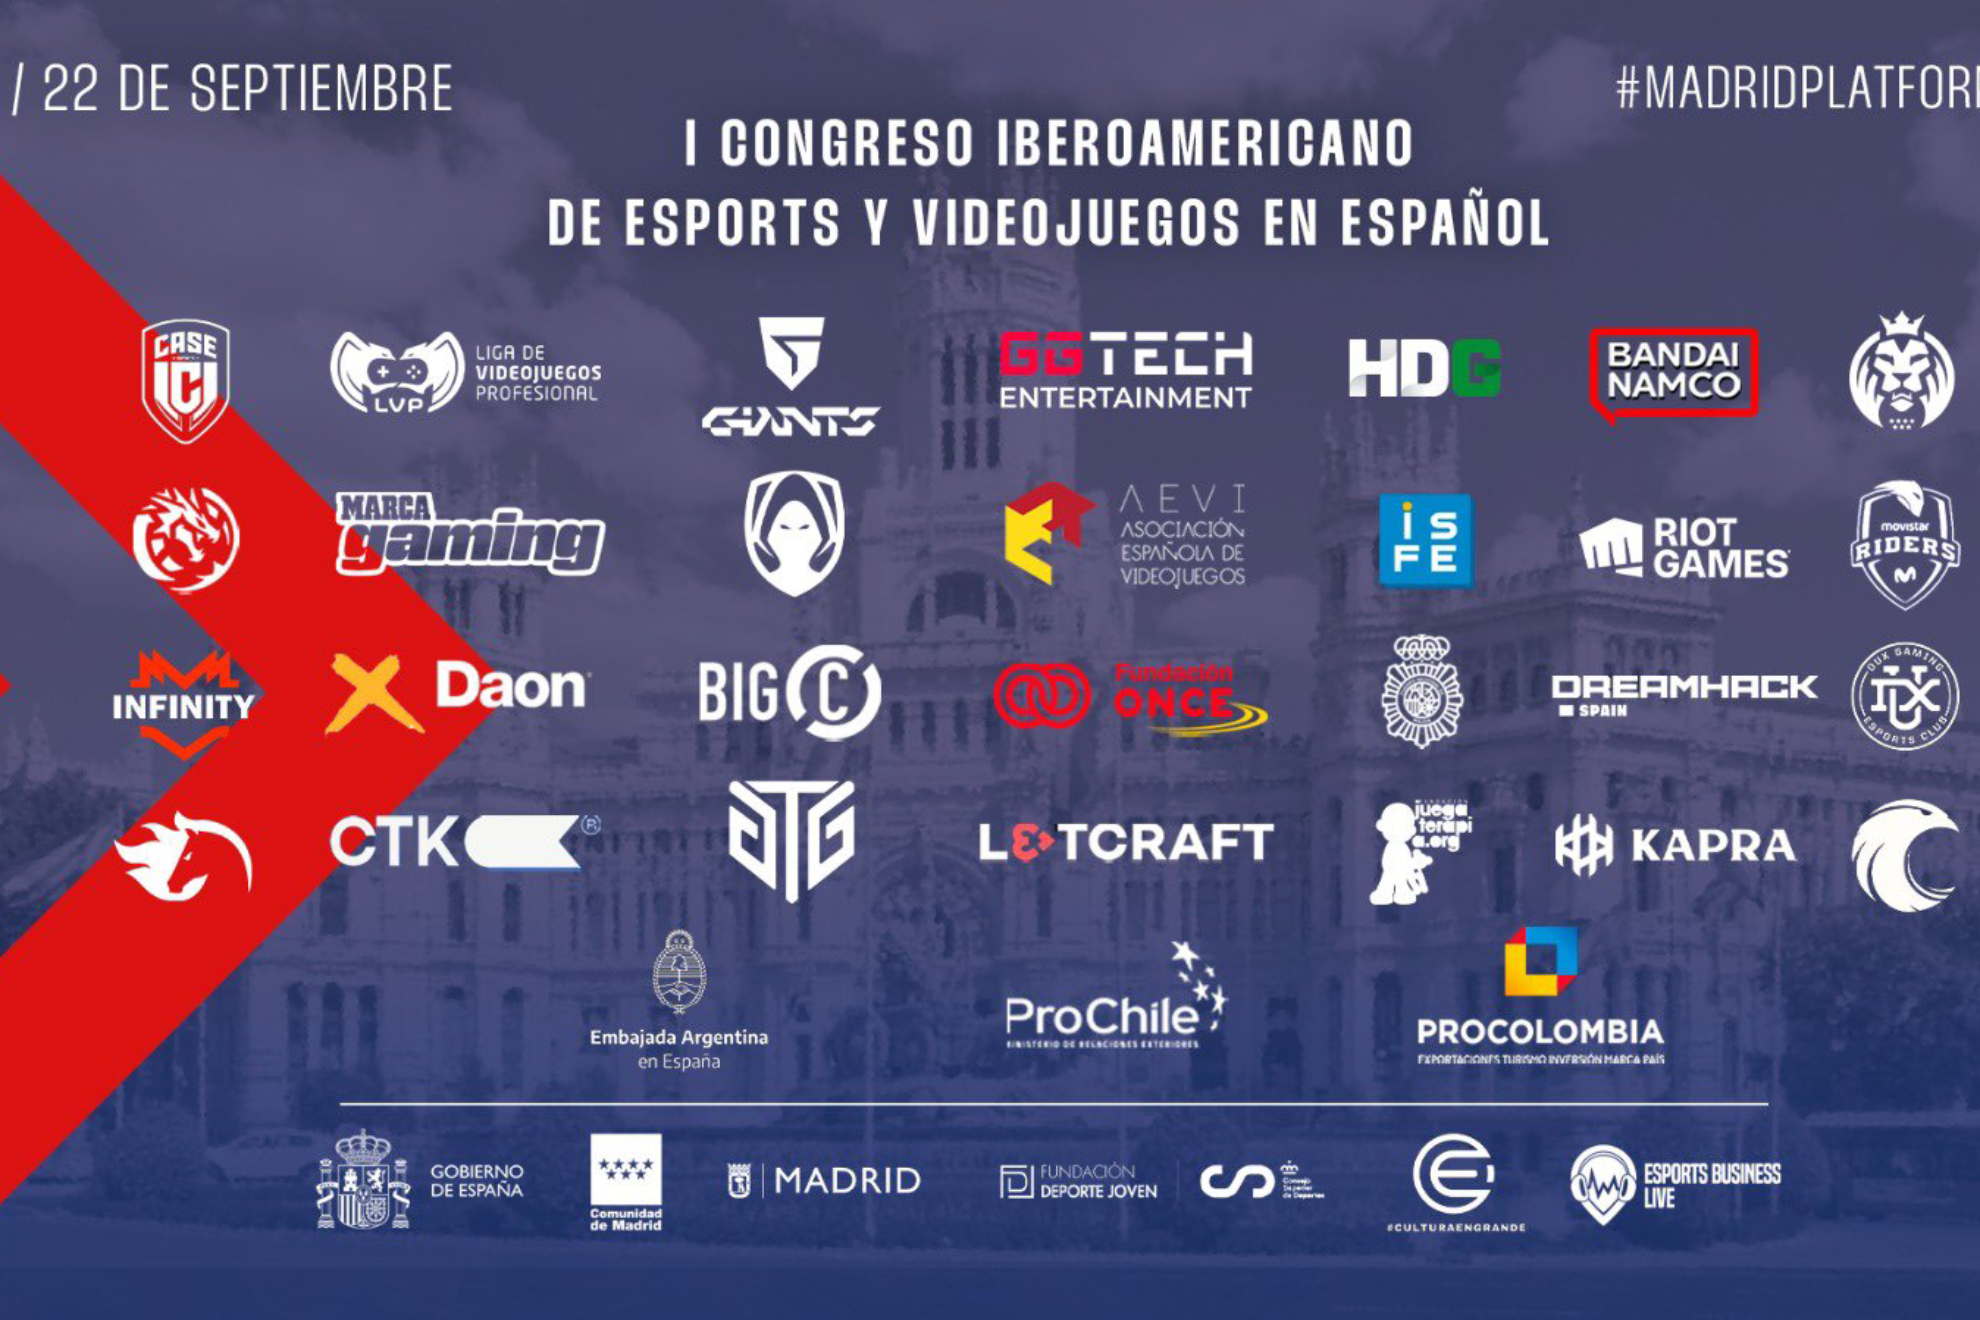 Da comienzo el I Congreso Iberoamericano de Esports y Videojuegos gracias a EBLive, Madrid Platform y Cultura en Grande